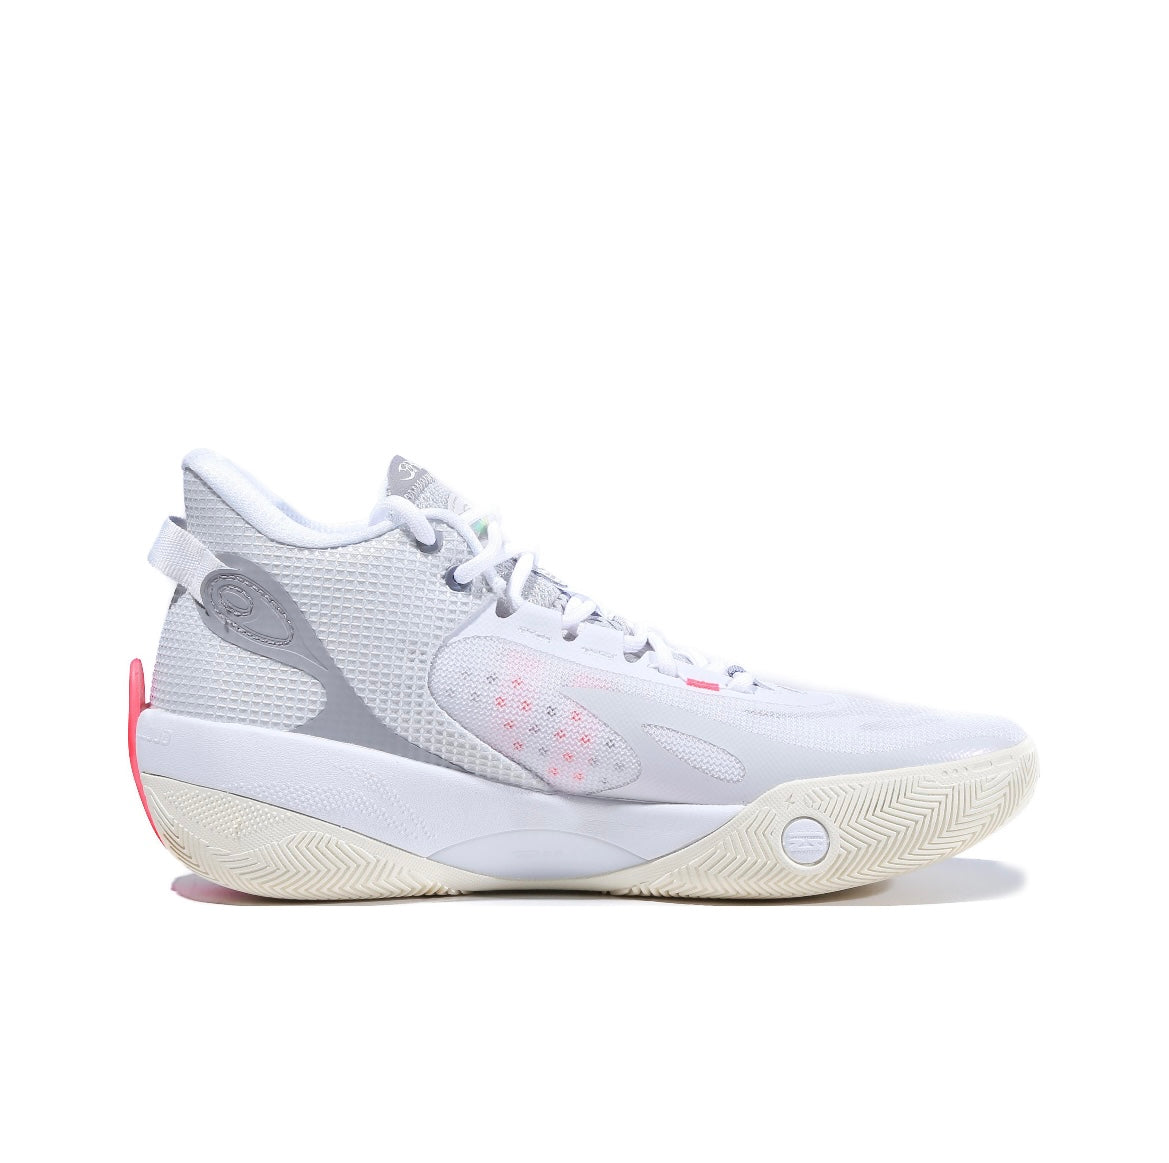 オンライン限定商品 LI-Ning shadow3 White Pink - バスケットボール